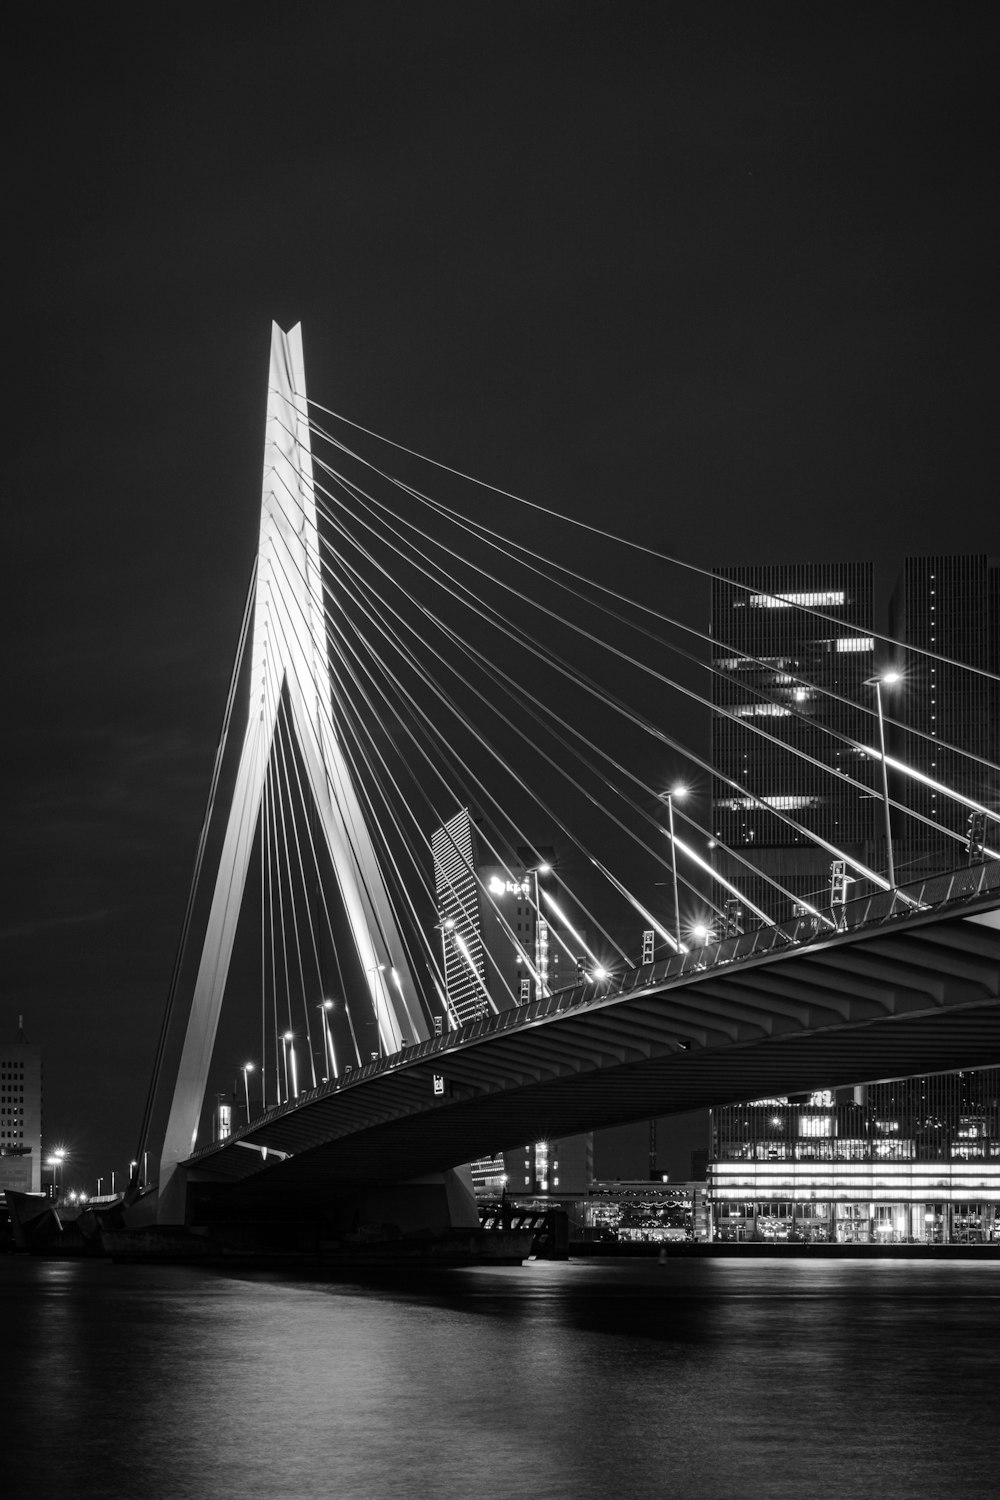 Foto in scala di grigi del ponte durante la notte